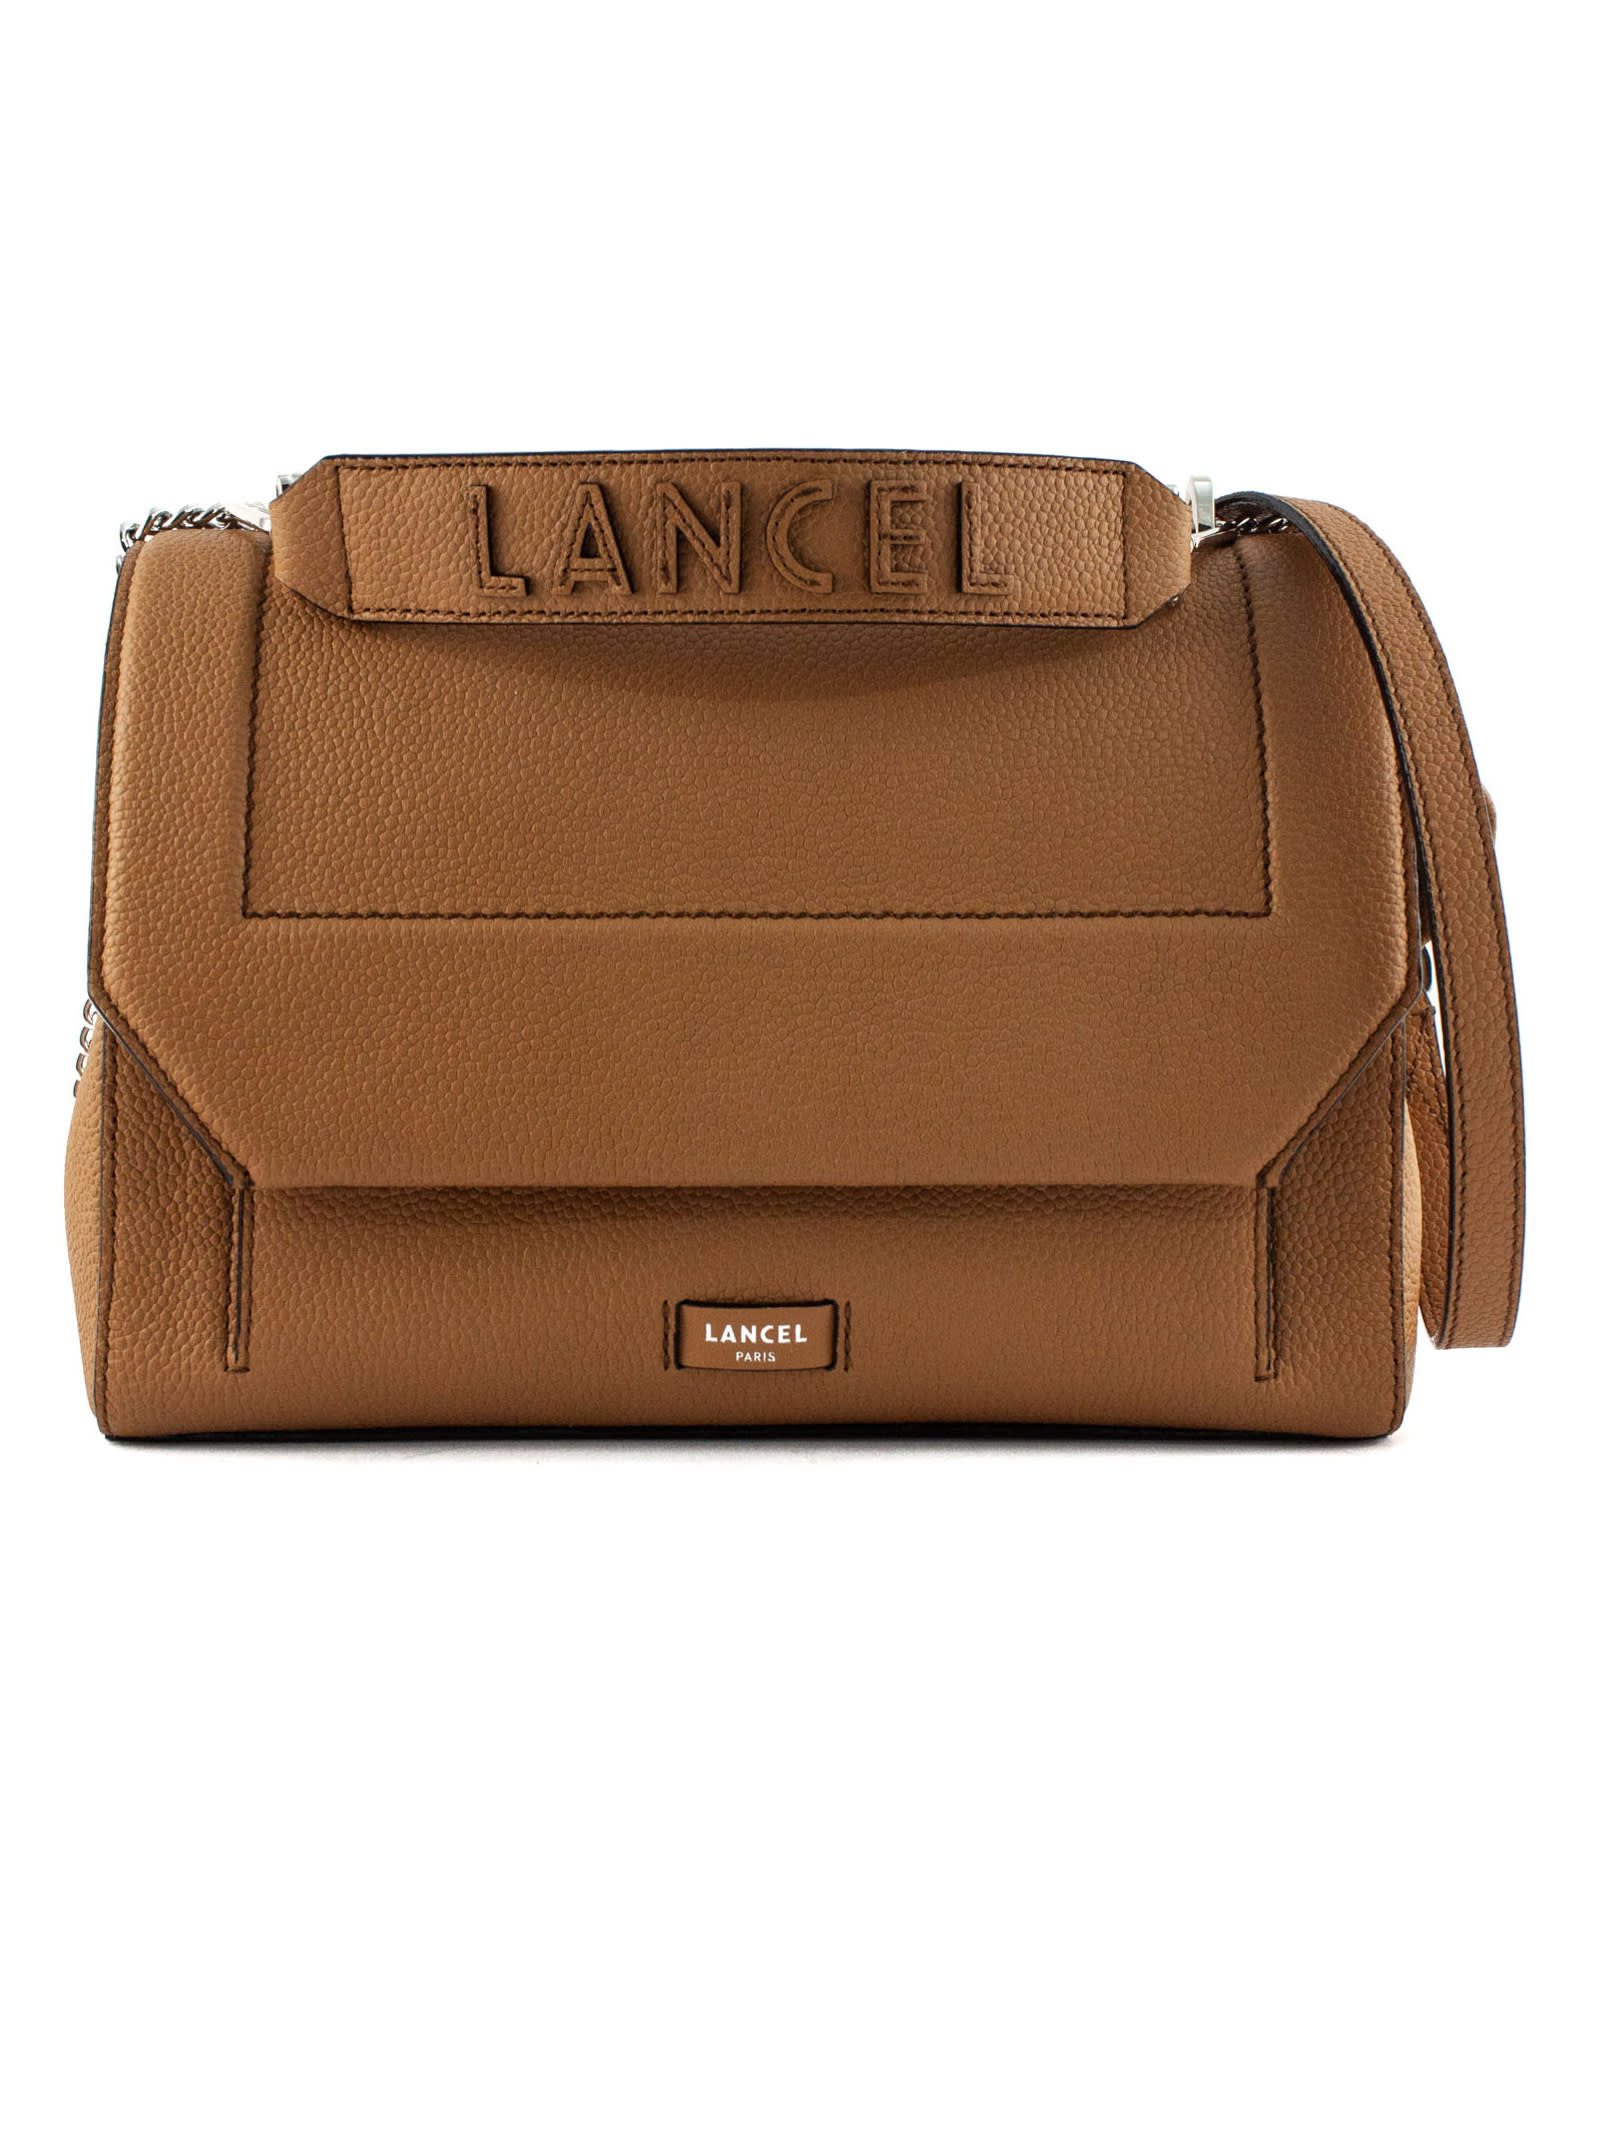 Lancel Brown Grained Cowhide Leather Shoulder Bag